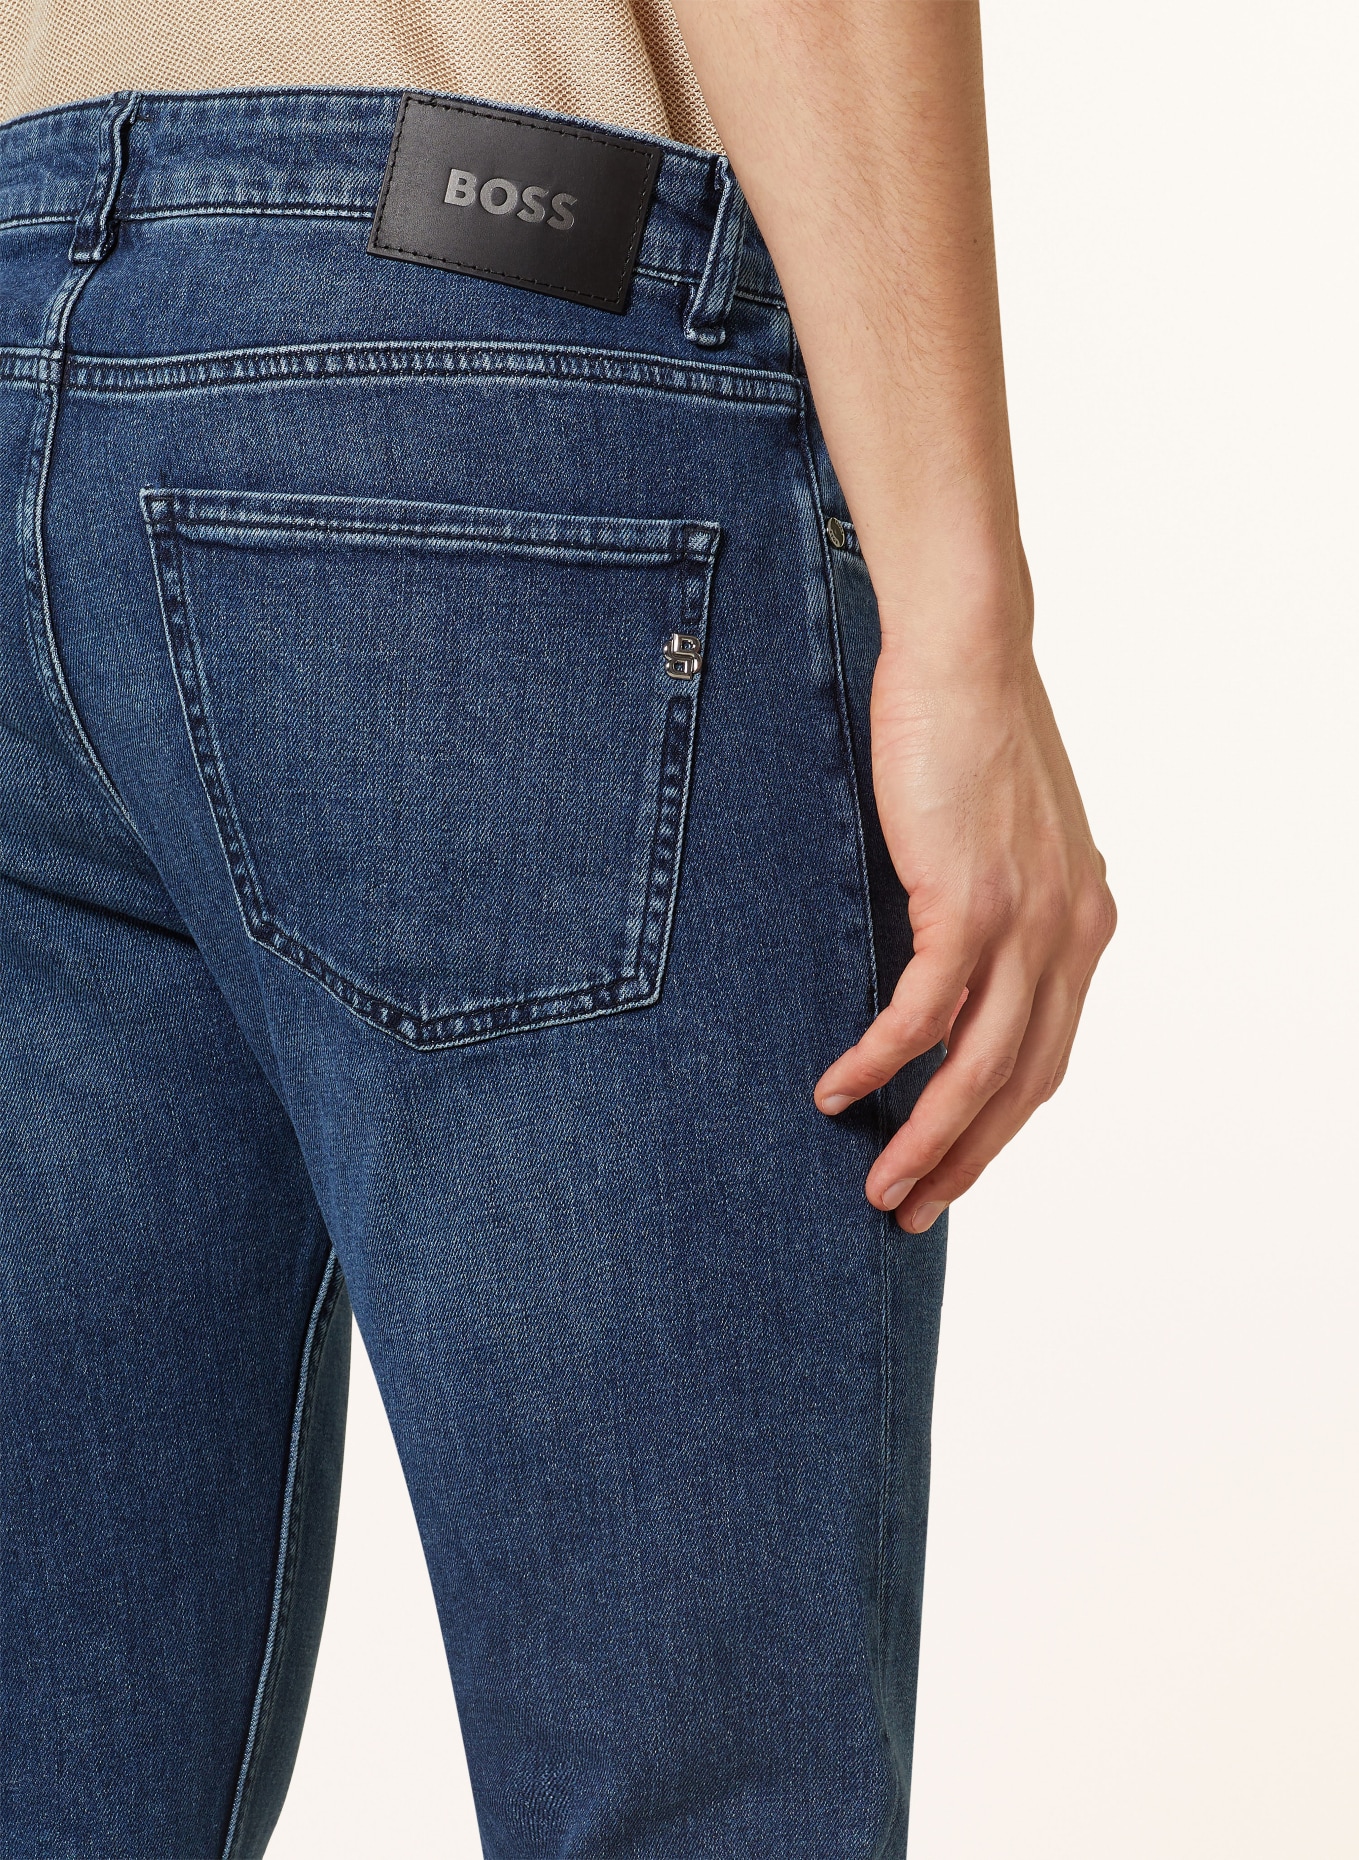 BOSS Jeans DELAWARE Slim Fit, Farbe: 416 NAVY (Bild 6)